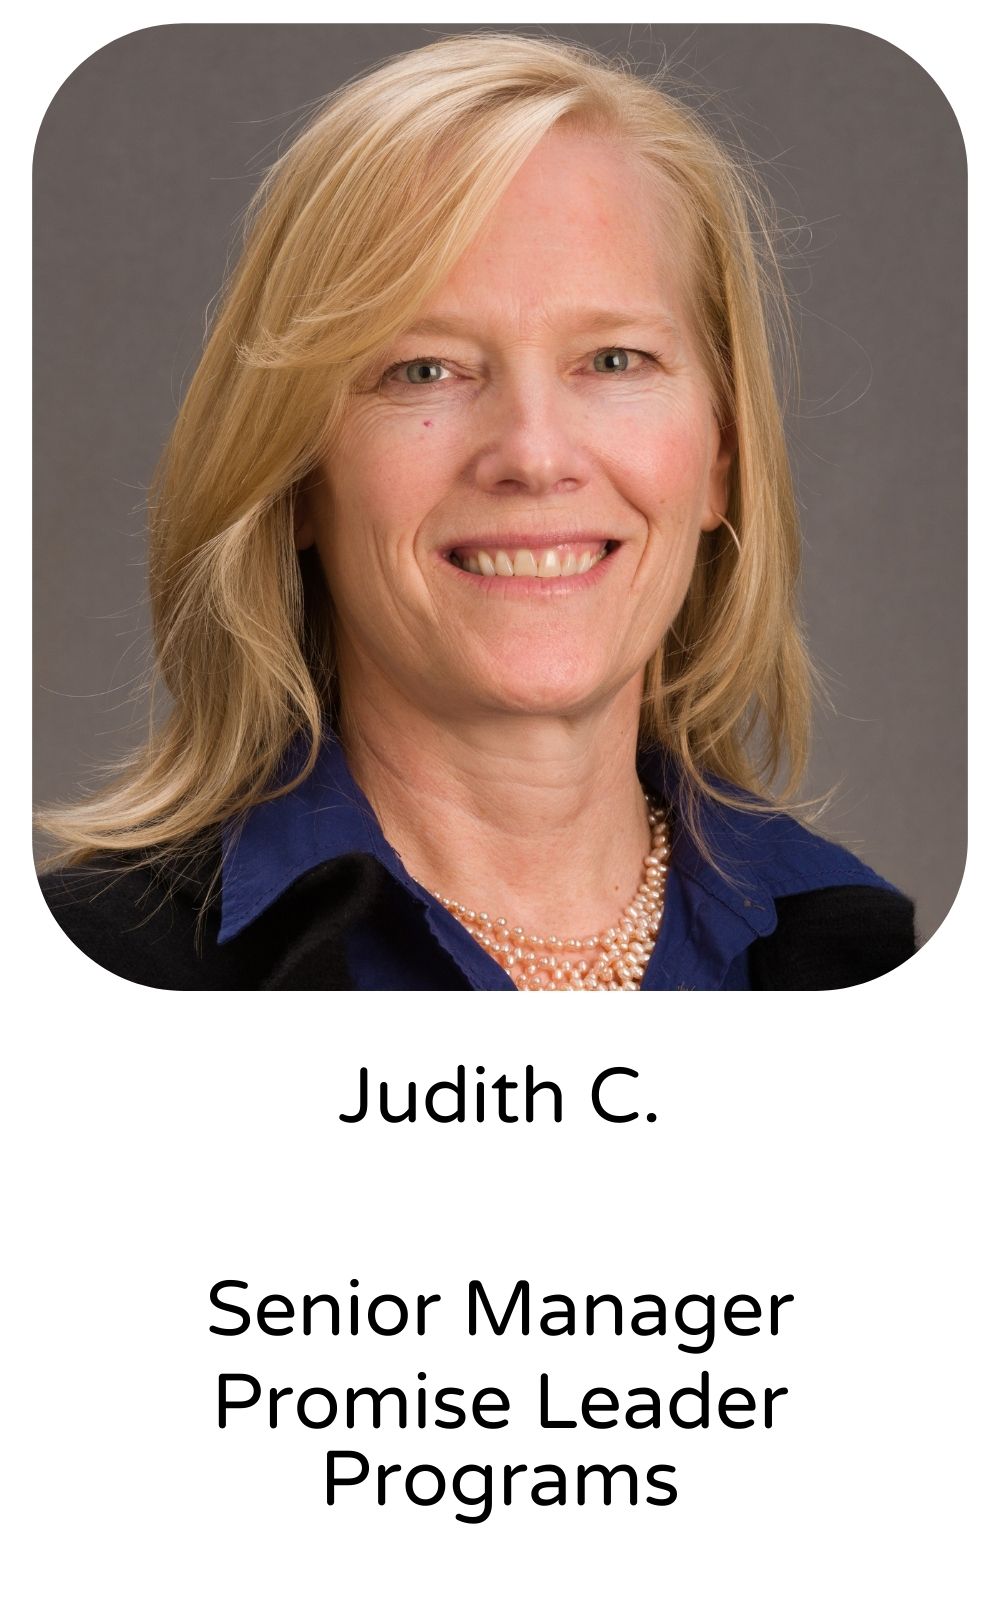 Judith C, Senior Manager, Program Leader Programs